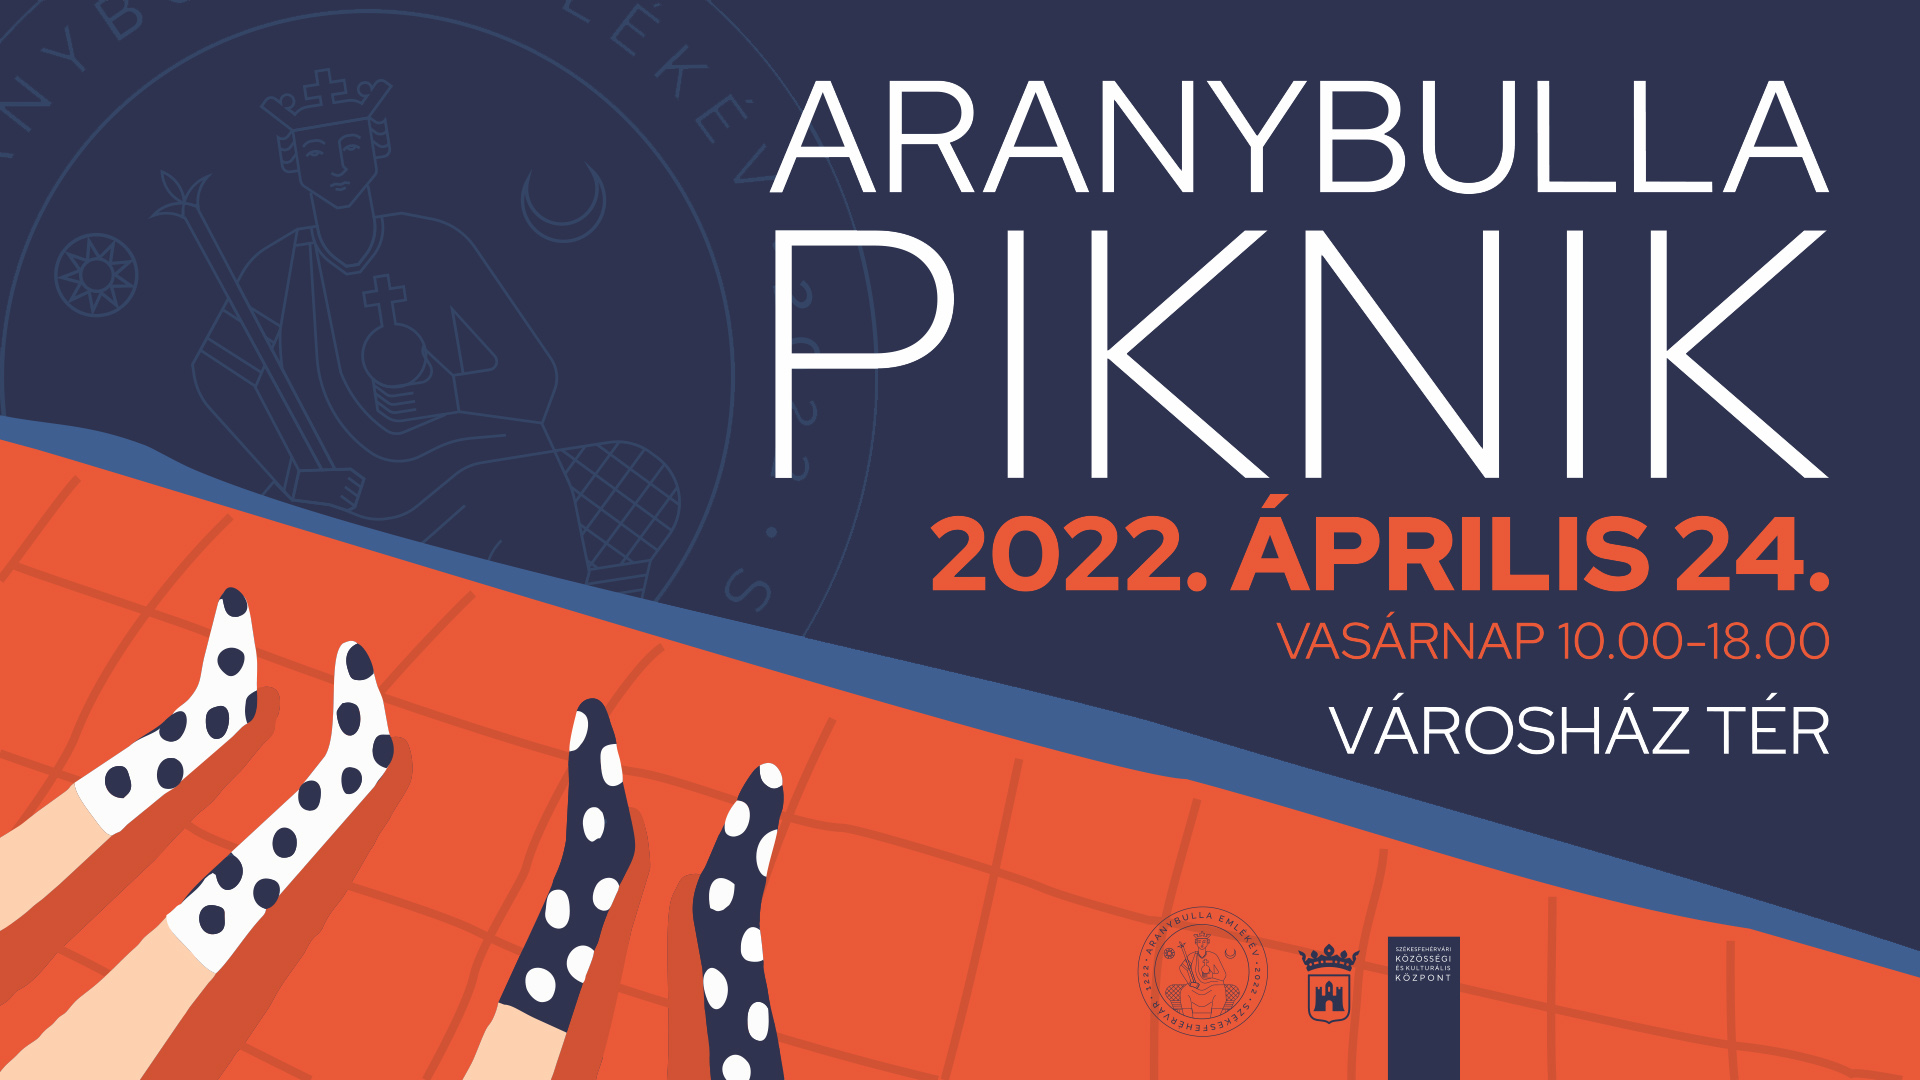 Időutazás az Aranybulla pikniken április 24-én vasárnap